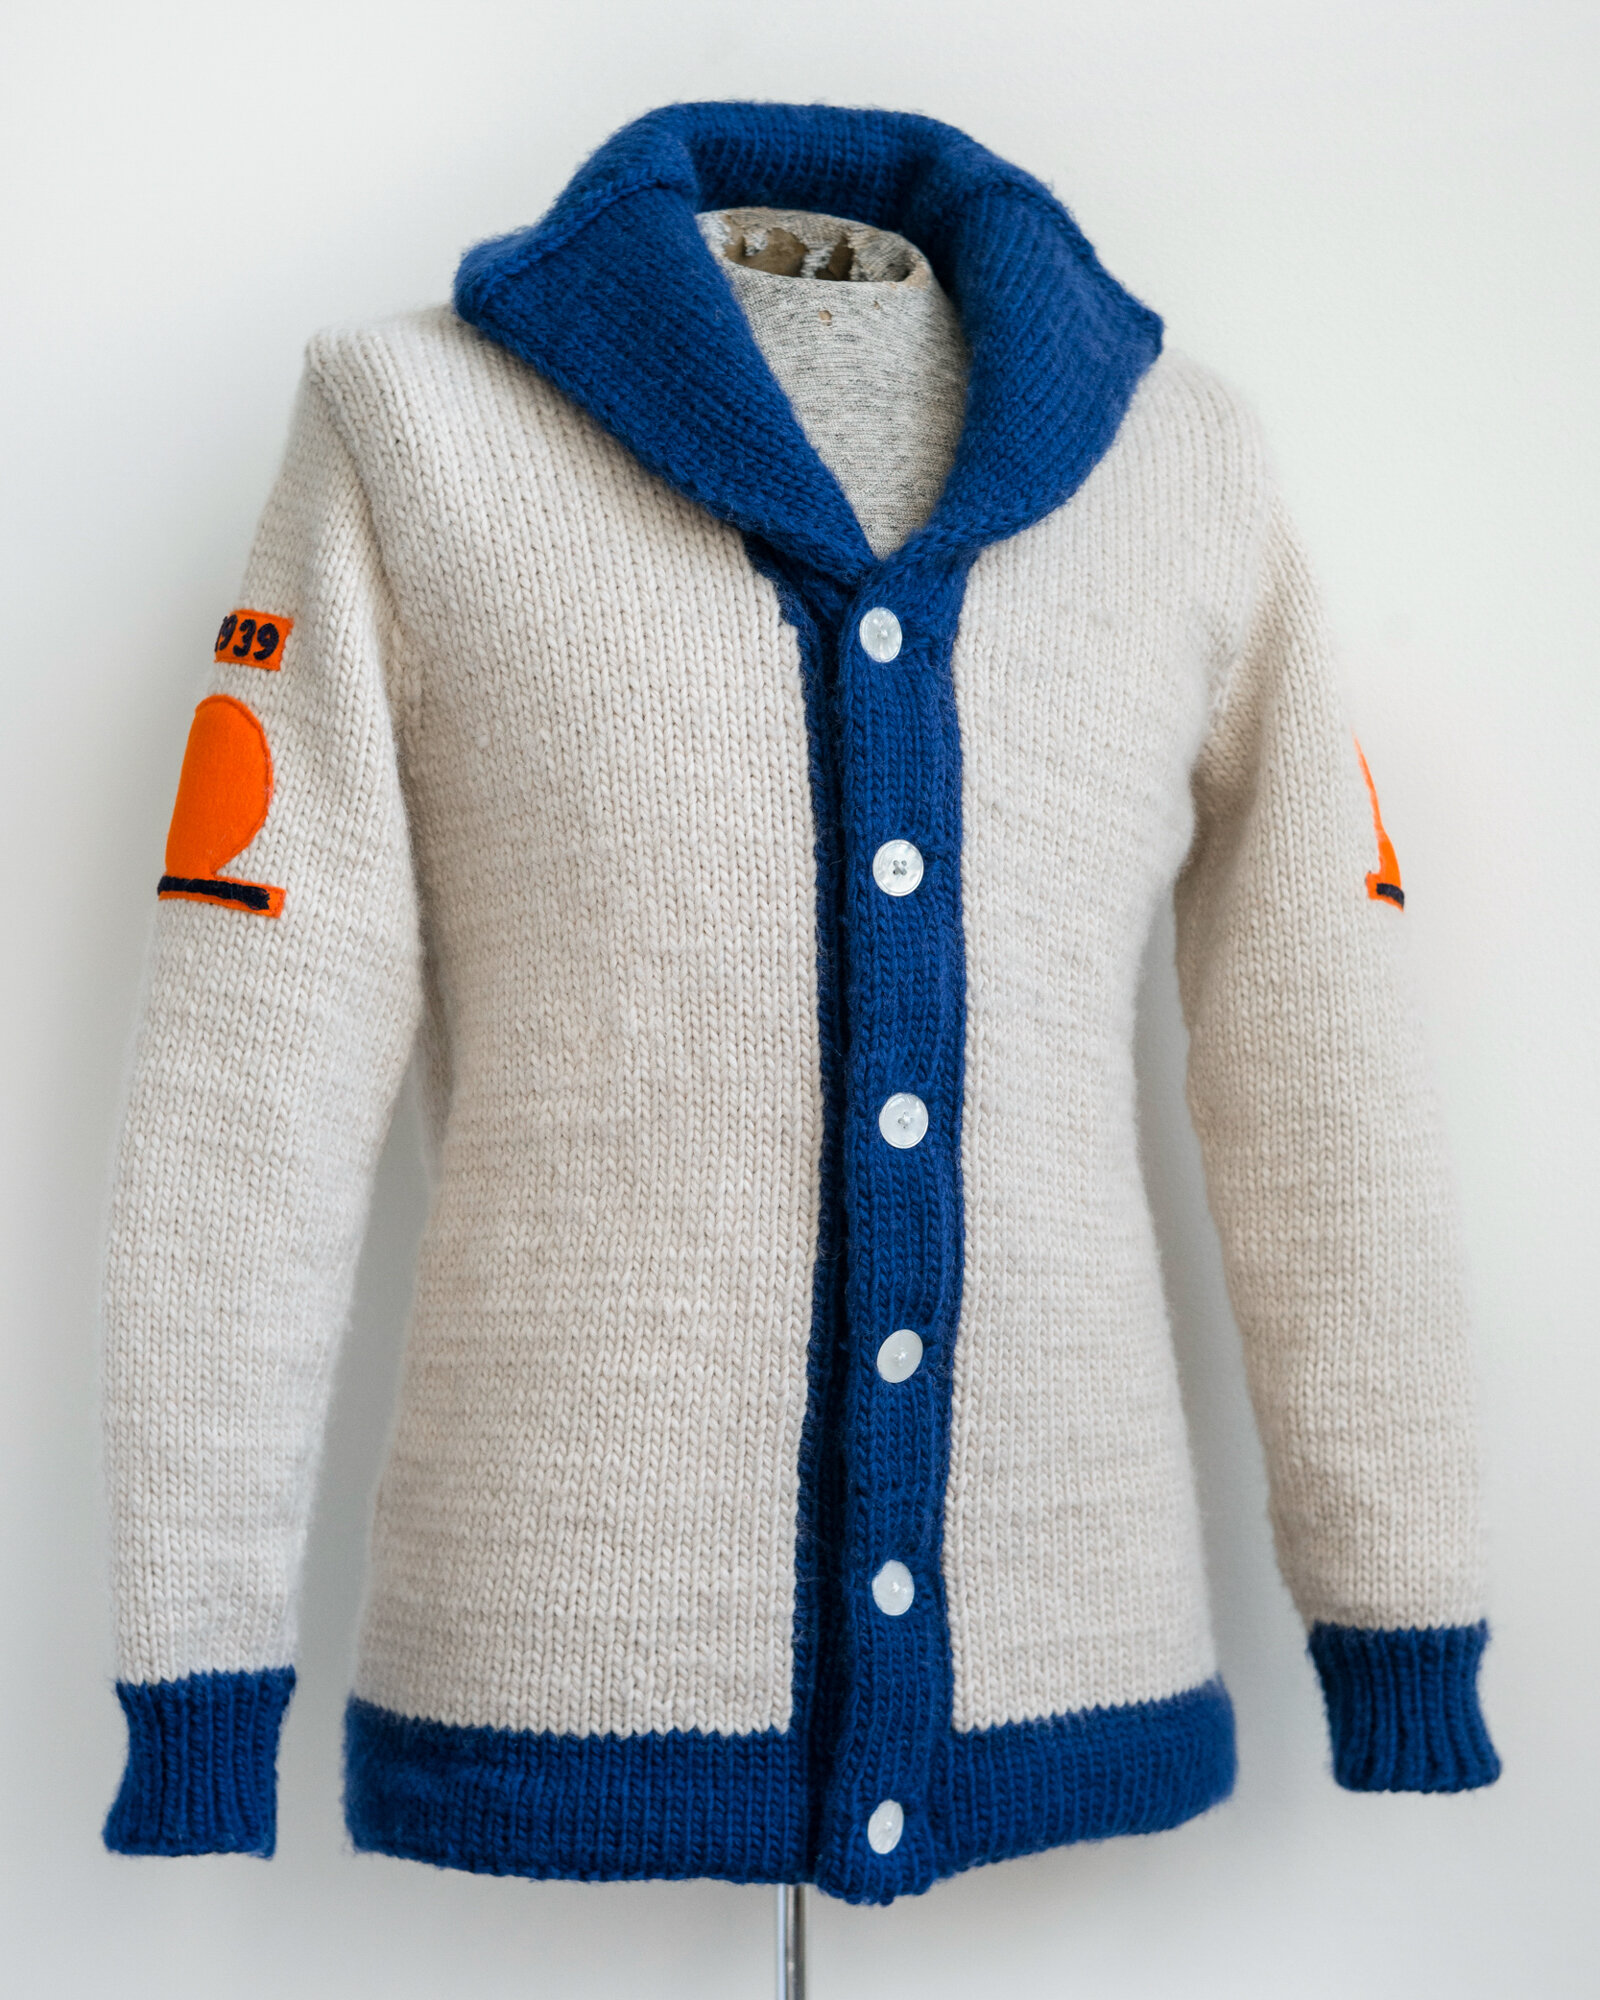 nick dinatale_1939 worlds fair hand knitted wool baseball sweater-1-2.jpg